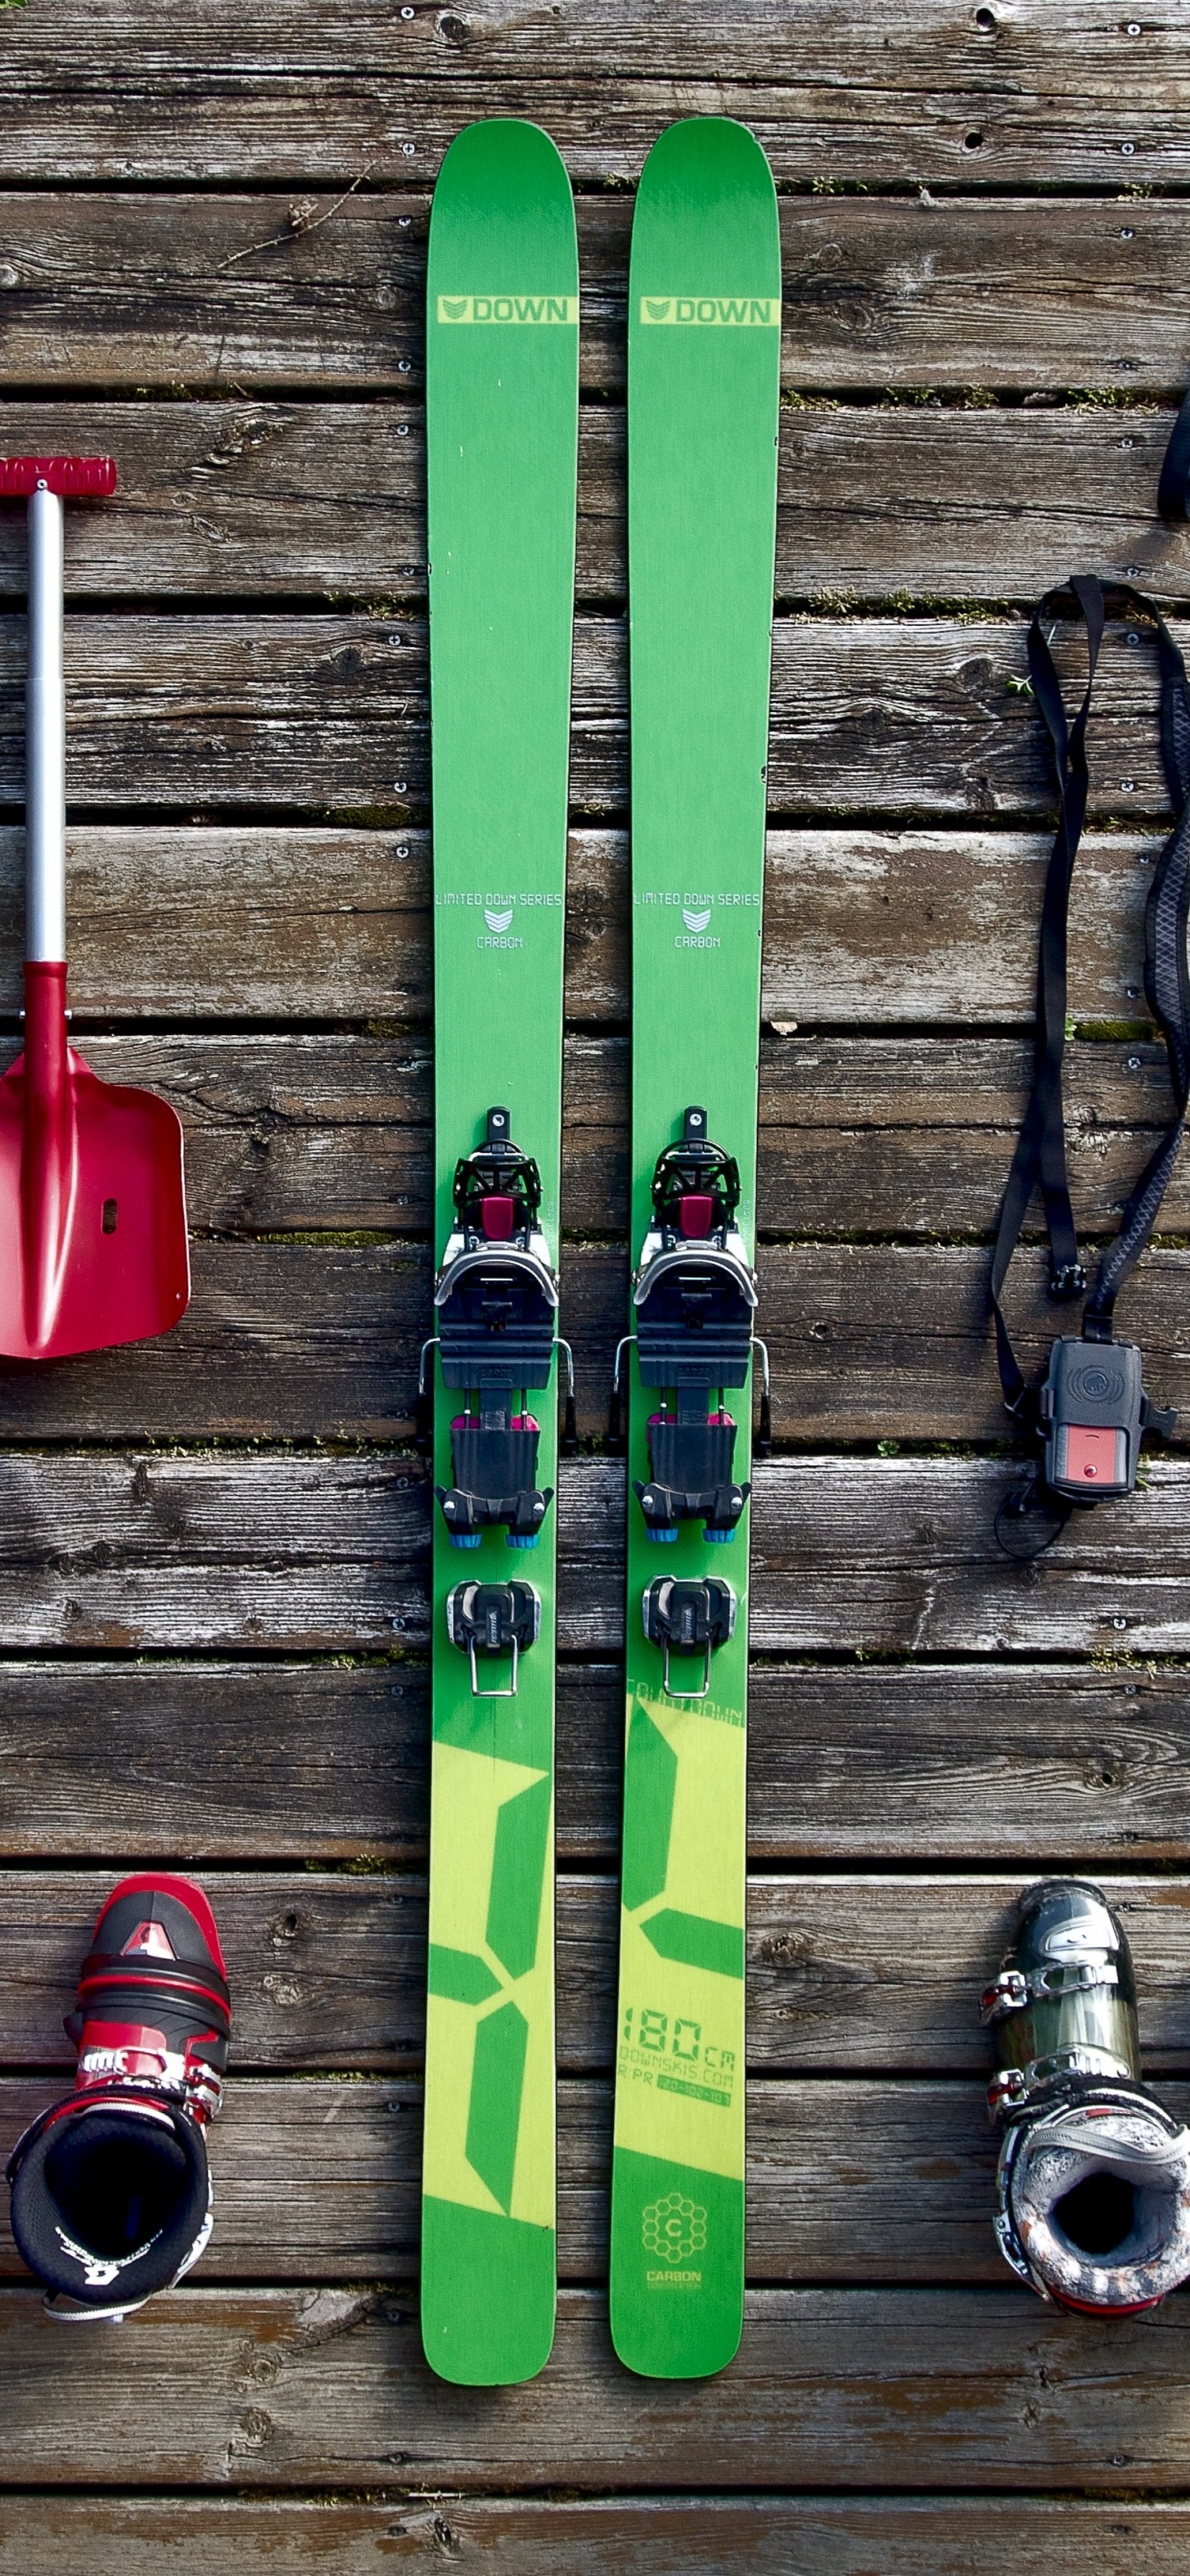 滑雪板, 滑板滑雪, 色彩, 木, 艺术 壁纸 1242x2688 允许